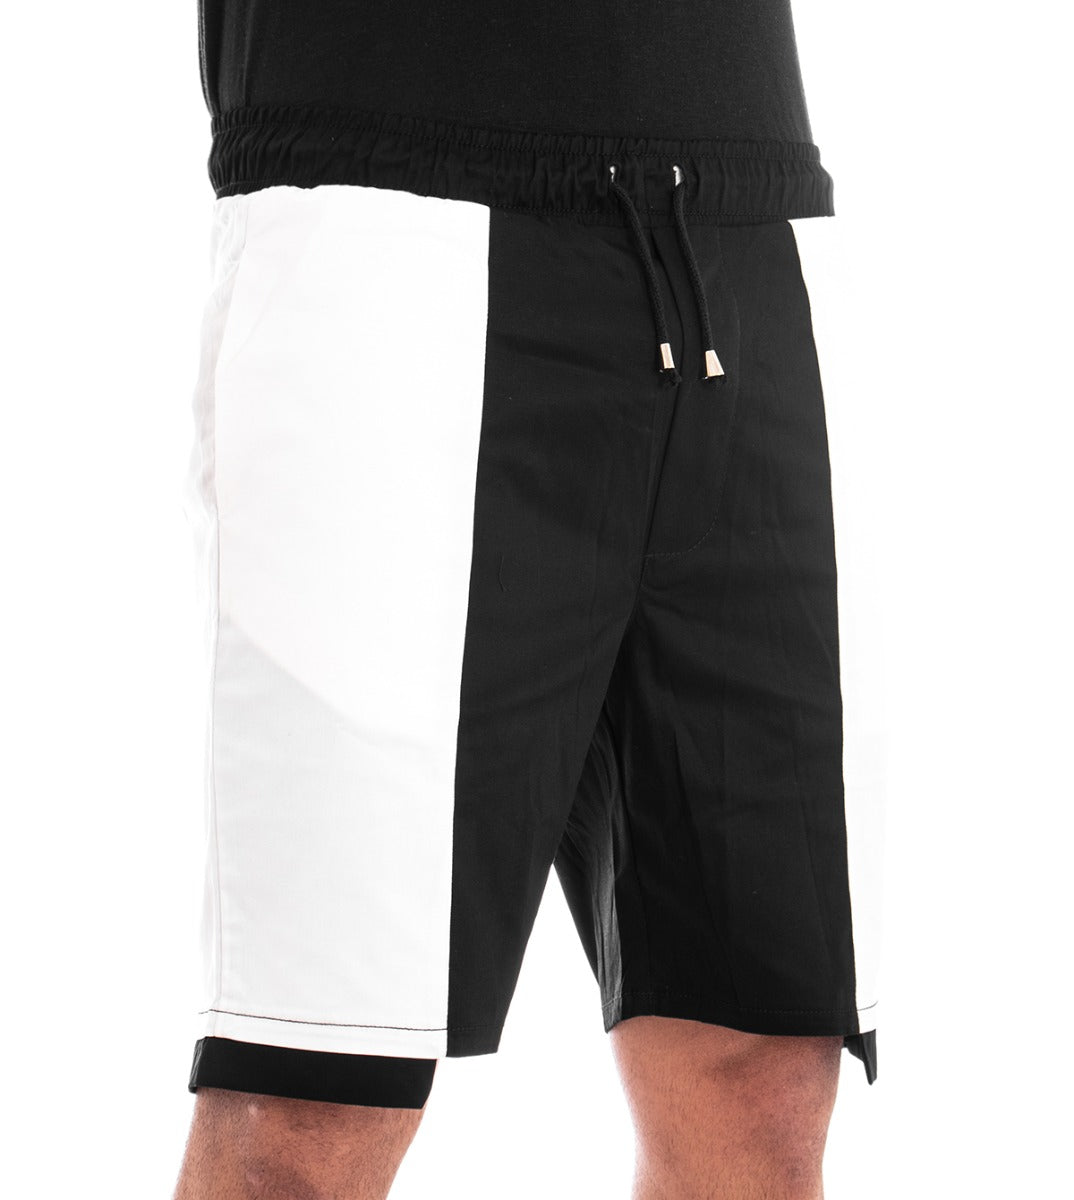 Bermuda Pantaloncino Uomo Corto Elastico Bicolore Nero GIOSAL-PC1280A